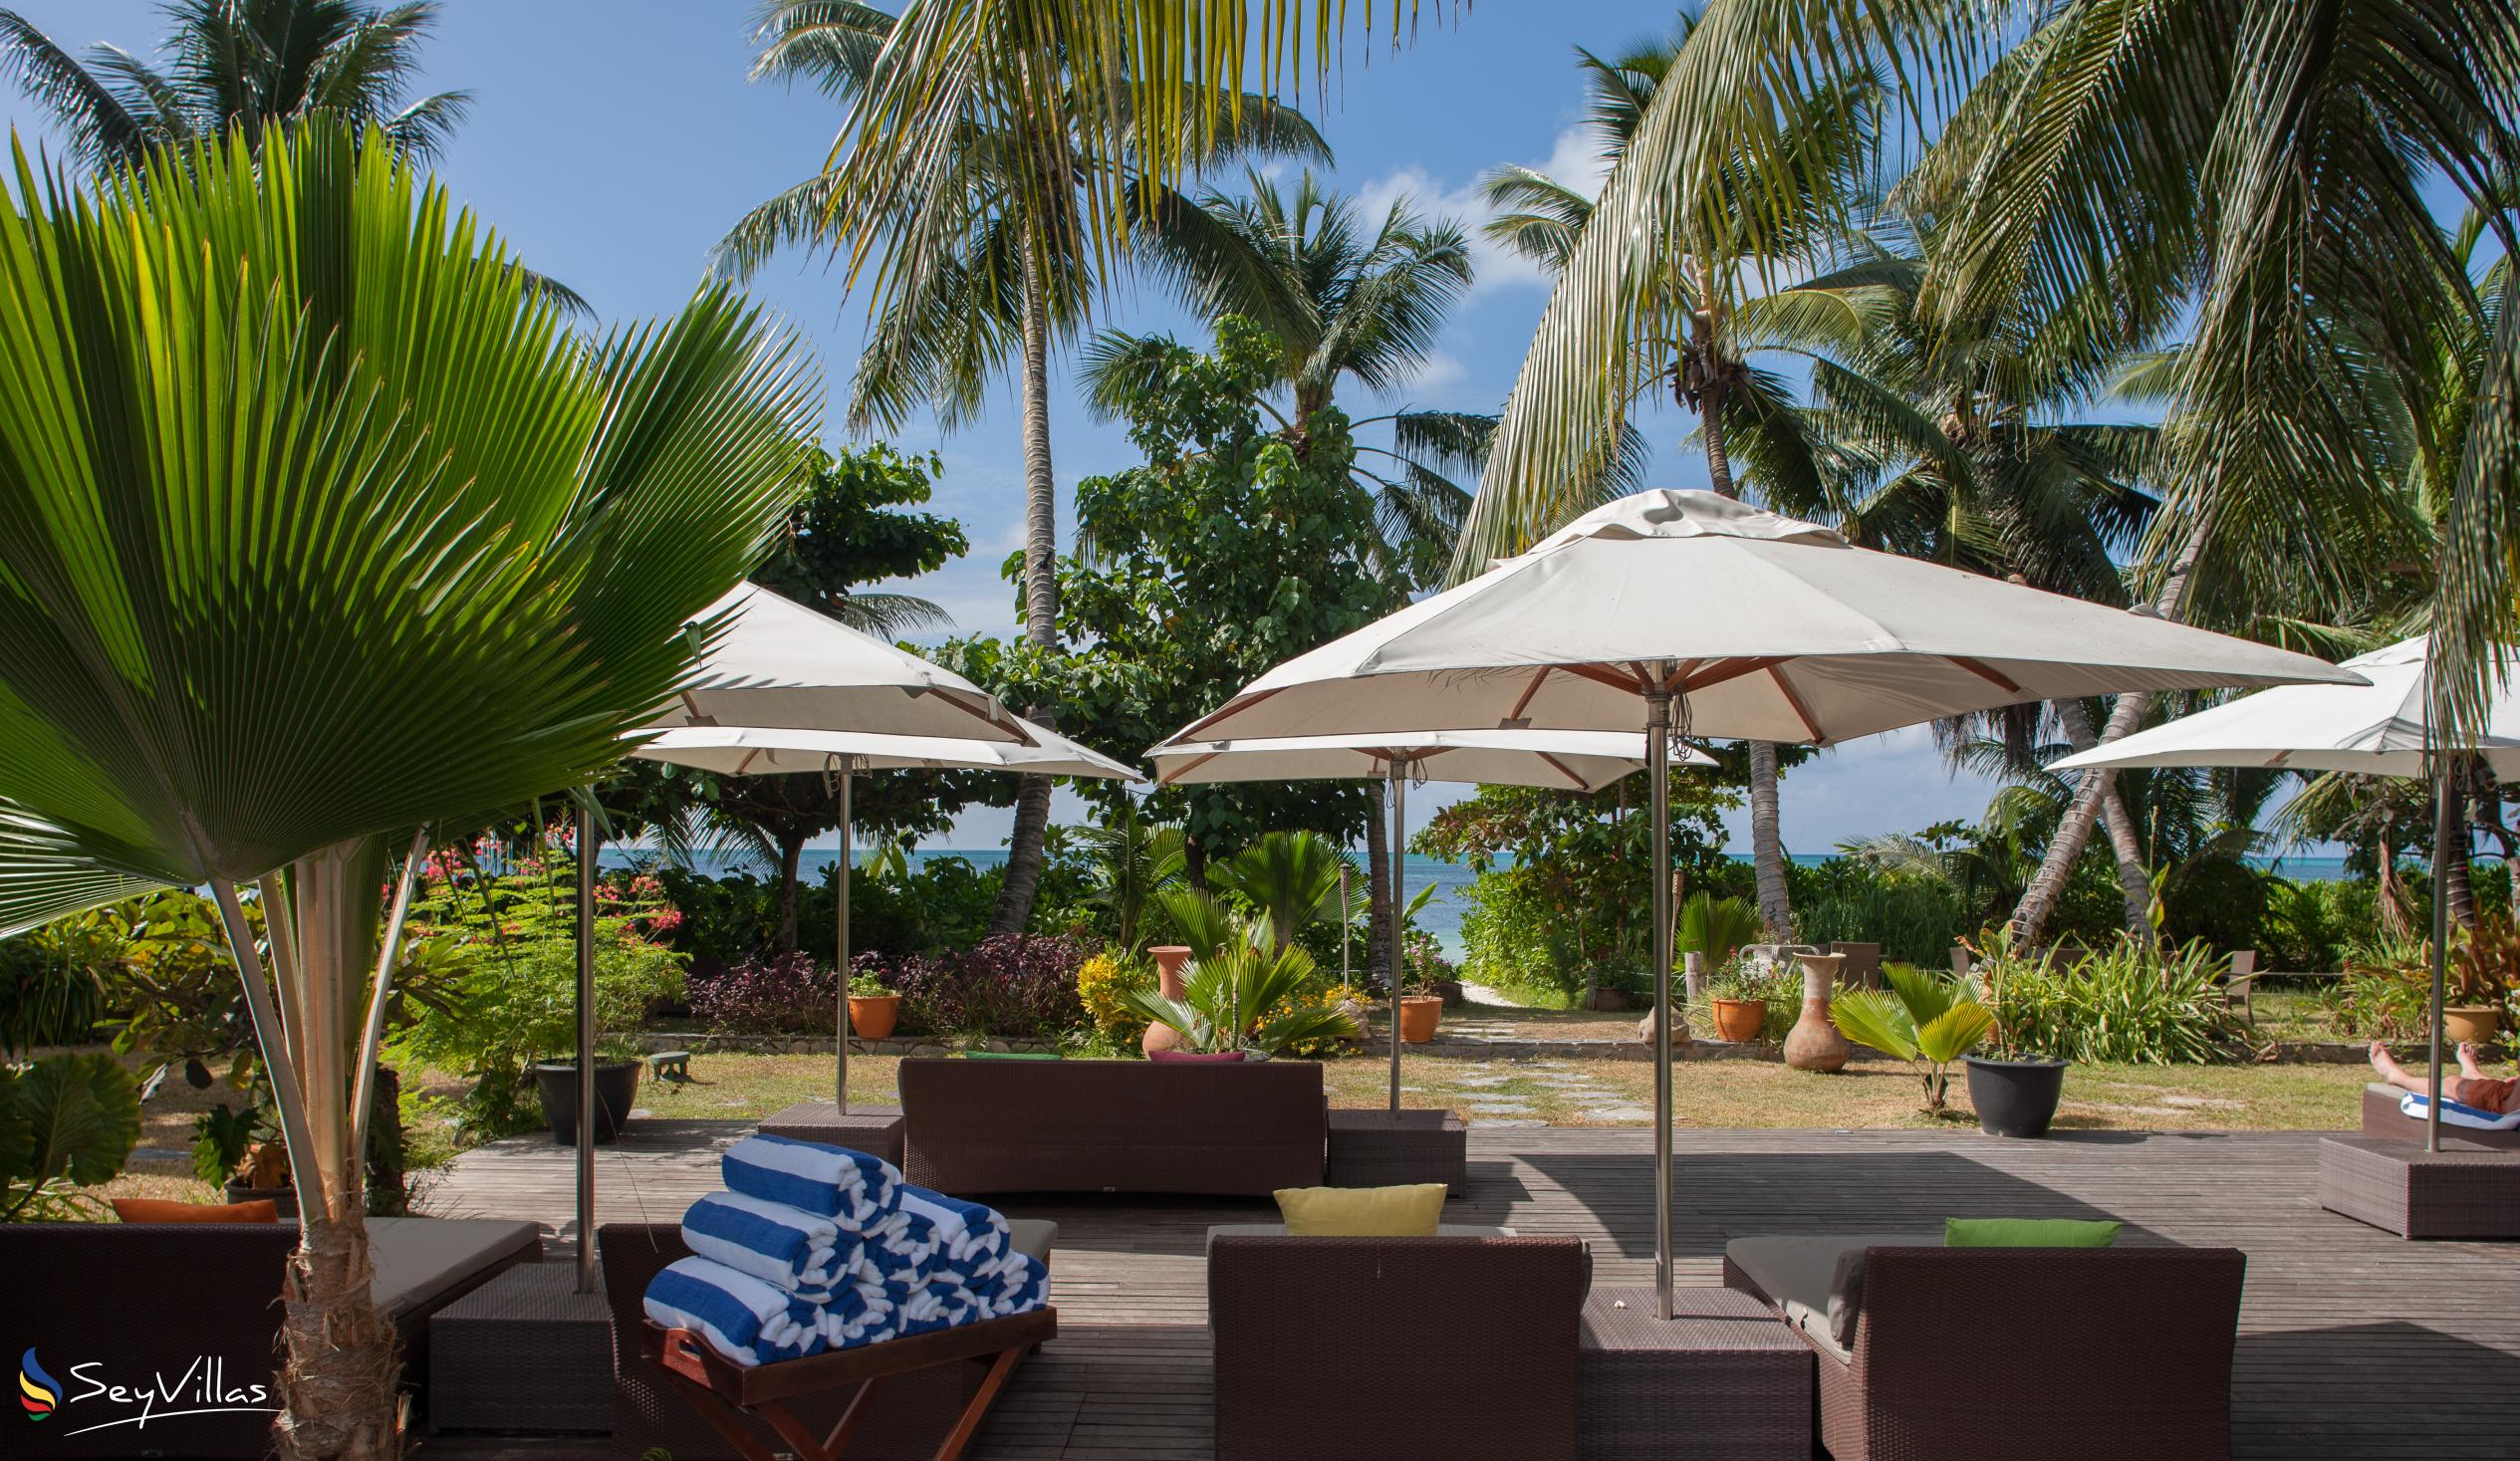 Foto 10: Dhevatara Beach Hotel - Aussenbereich - Praslin (Seychellen)